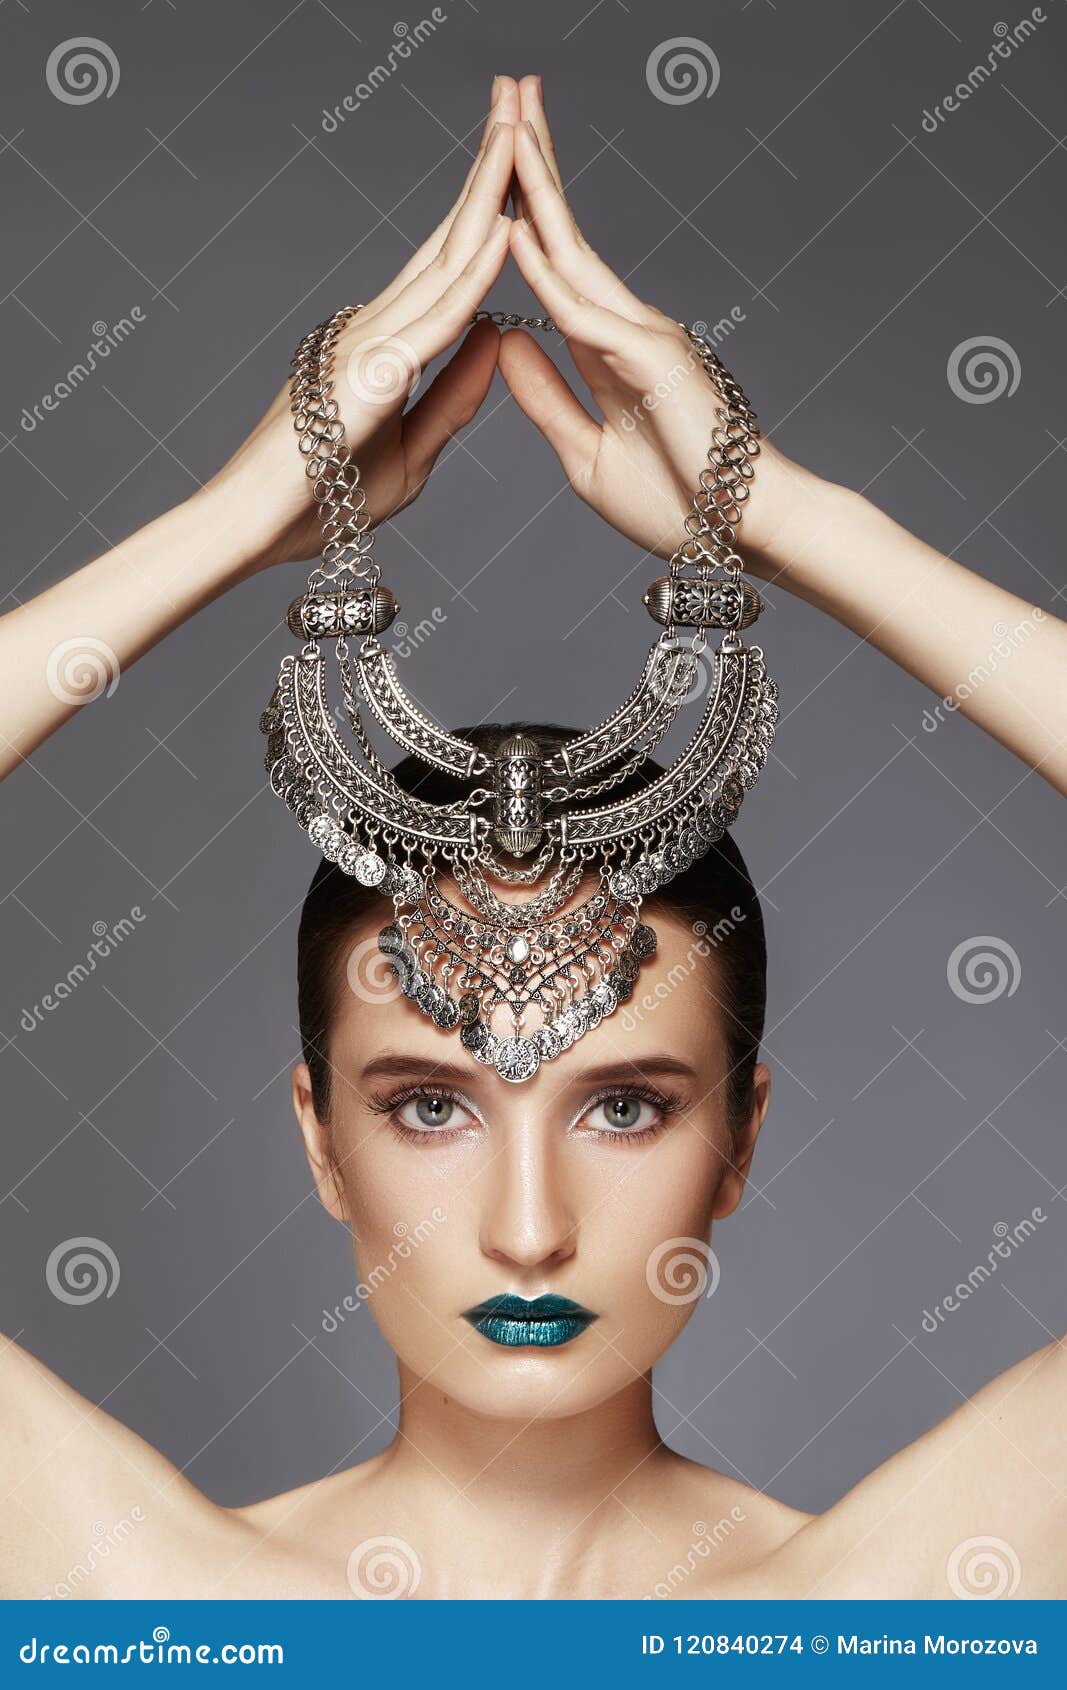 hair #fashion #jewelry #accessories  Jewelry, Jewelry photography, Fashion  jewelry